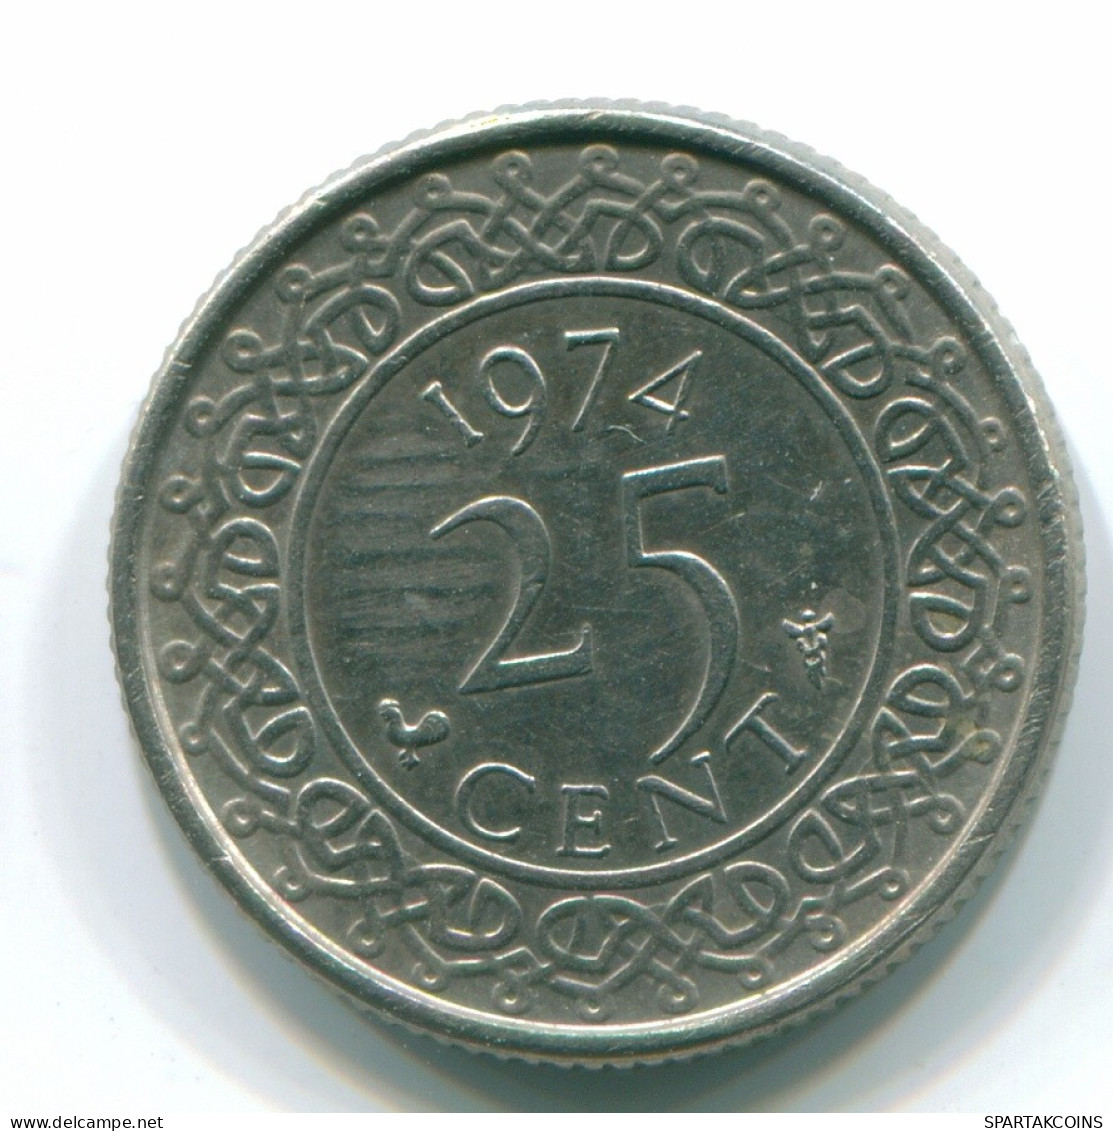 25 CENTS 1974 SURINAME NEERLANDÉS NETHERLANDS Nickel Colonial Moneda #S11238.E.A - Surinam 1975 - ...